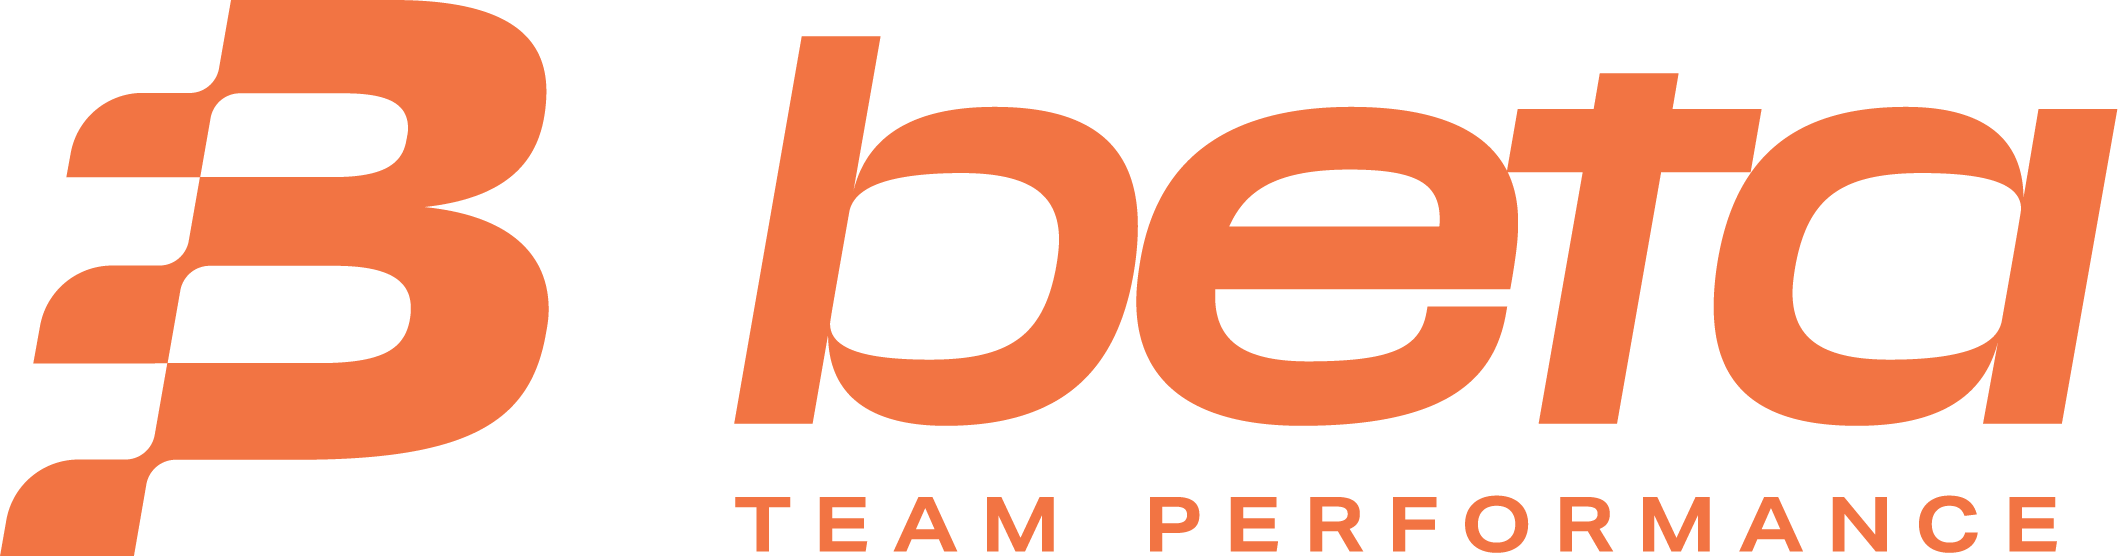 Beta_logo_payoff_orange_RGB